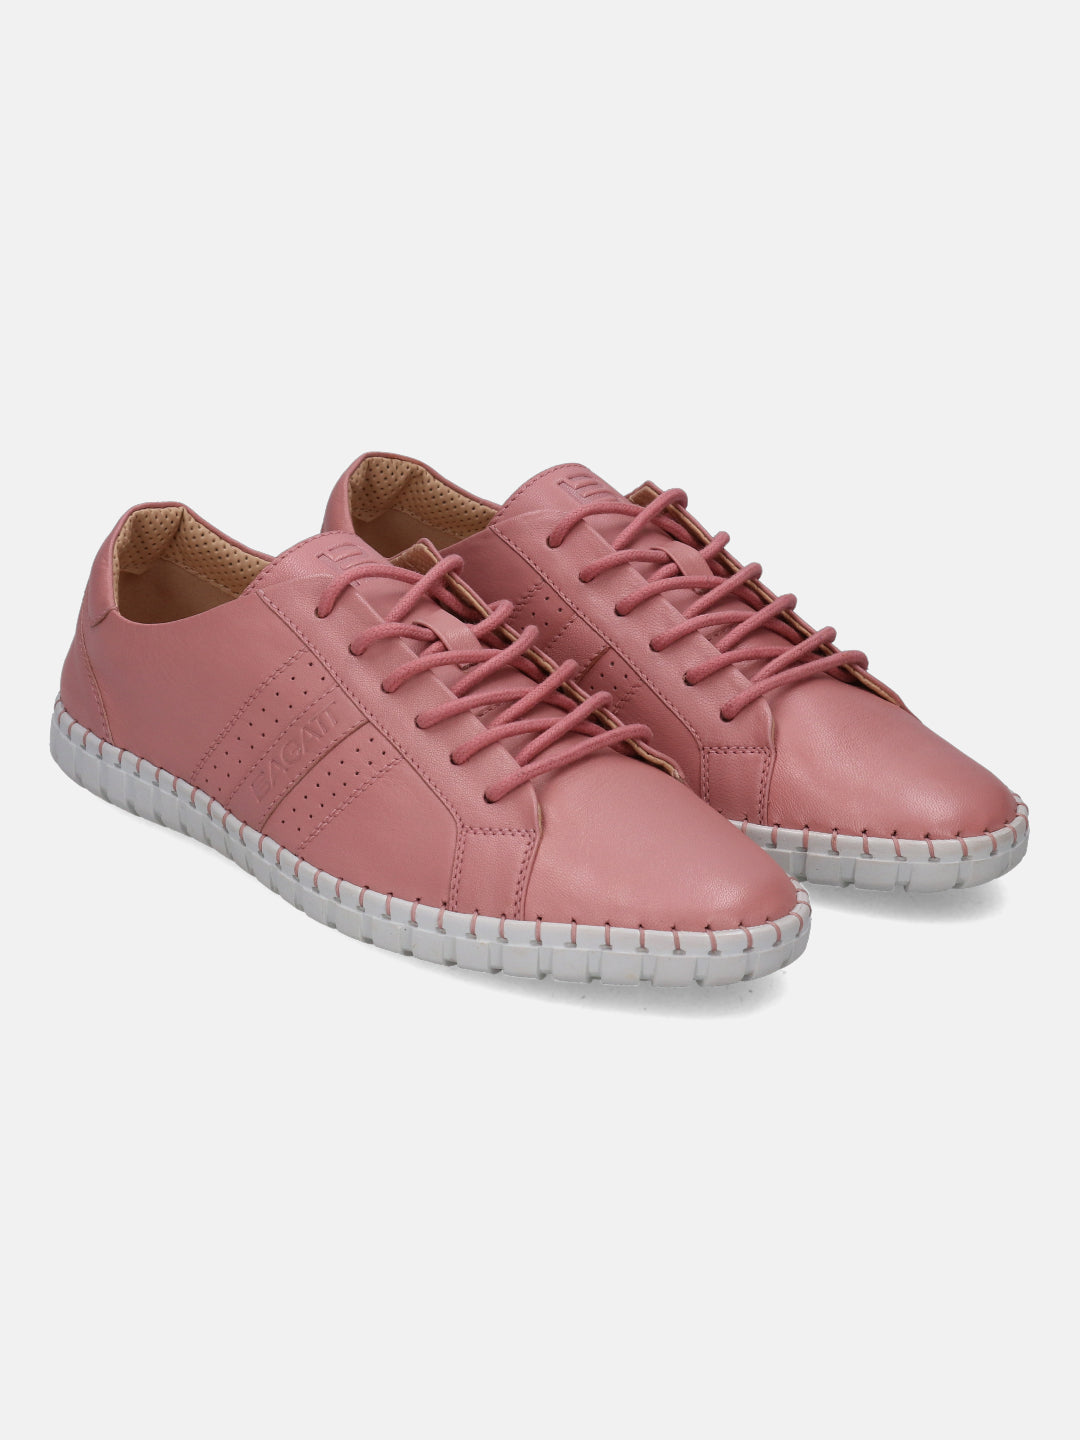 Bali Pink Sneakers - BAGATT